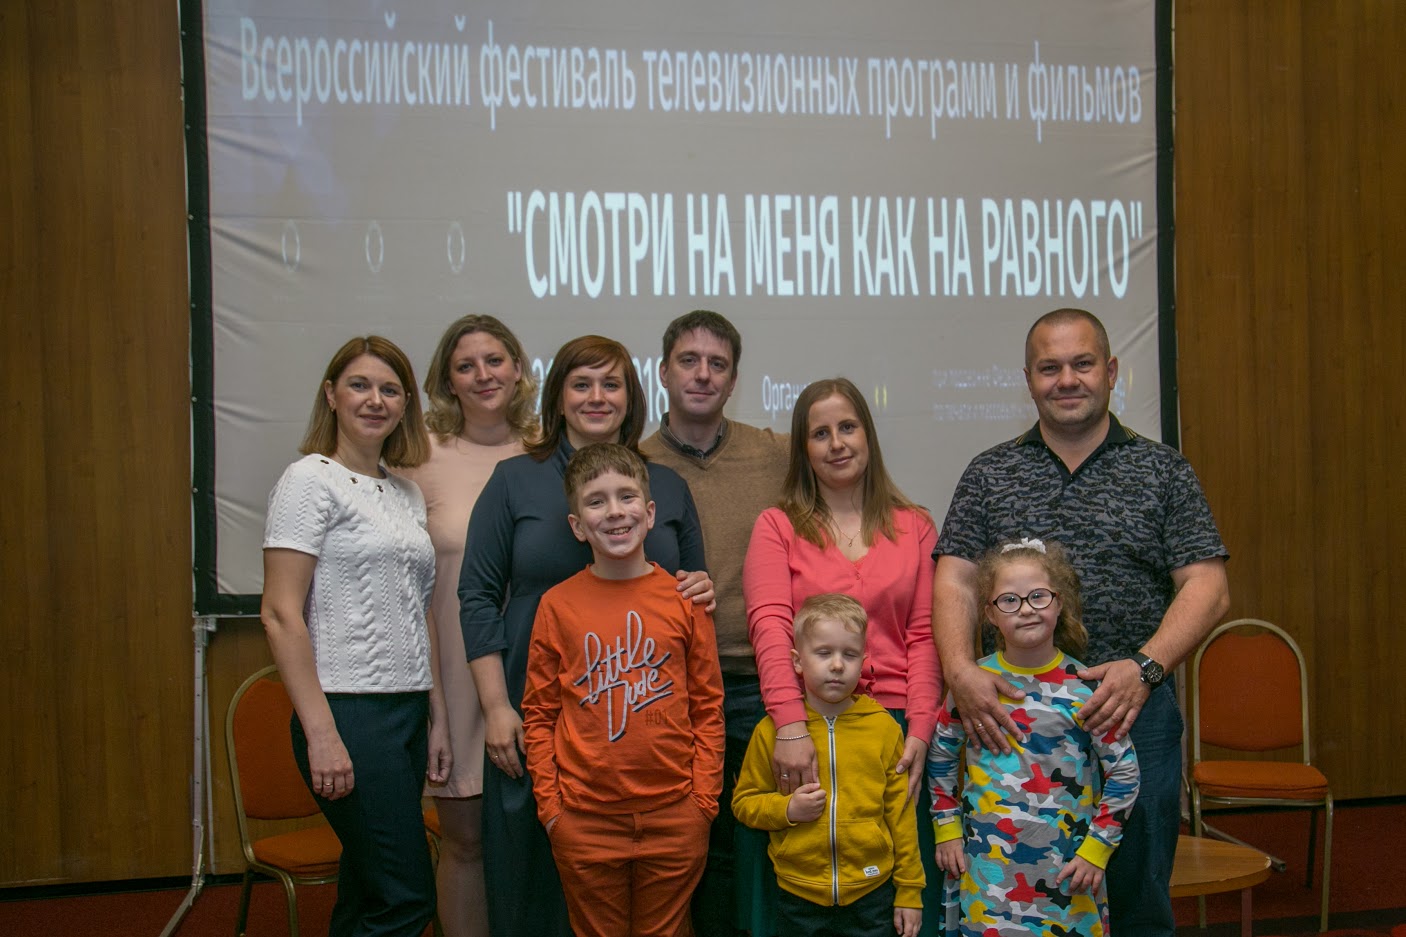 Всероссийский фестиваль телевизионных программ и фильмов «Смотри на меня как на равного»